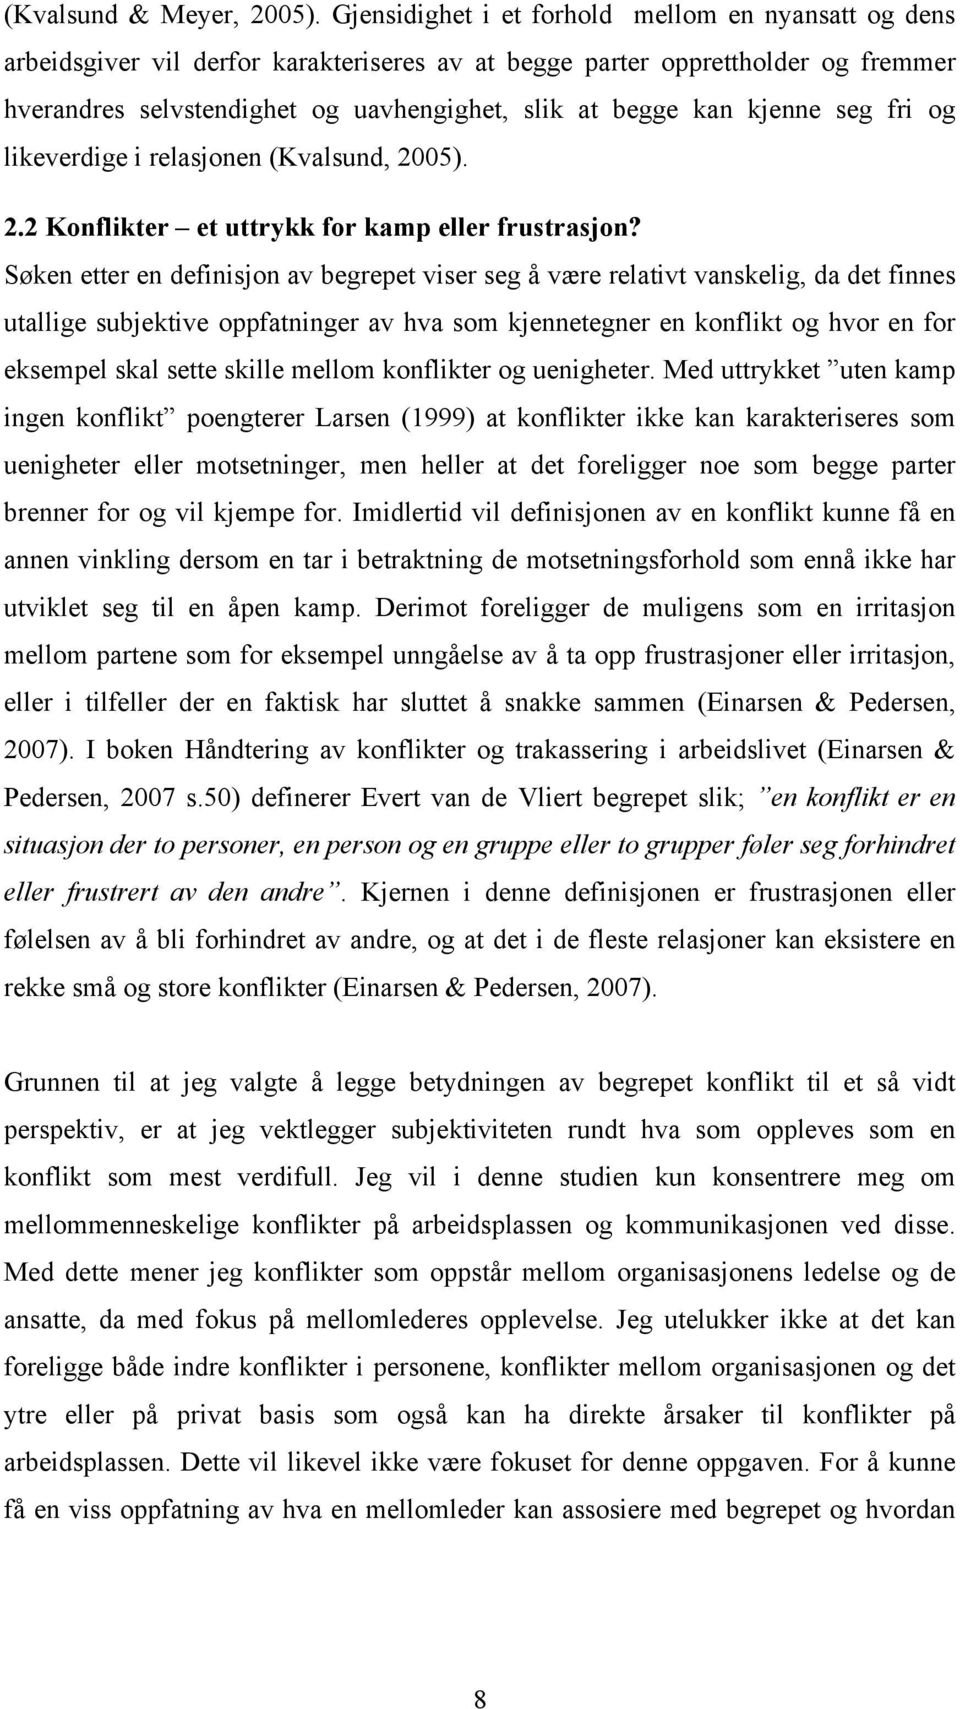 kjenne seg fri og likeverdige i relasjonen (Kvalsund, 2005). 2.2 Konflikter et uttrykk for kamp eller frustrasjon?